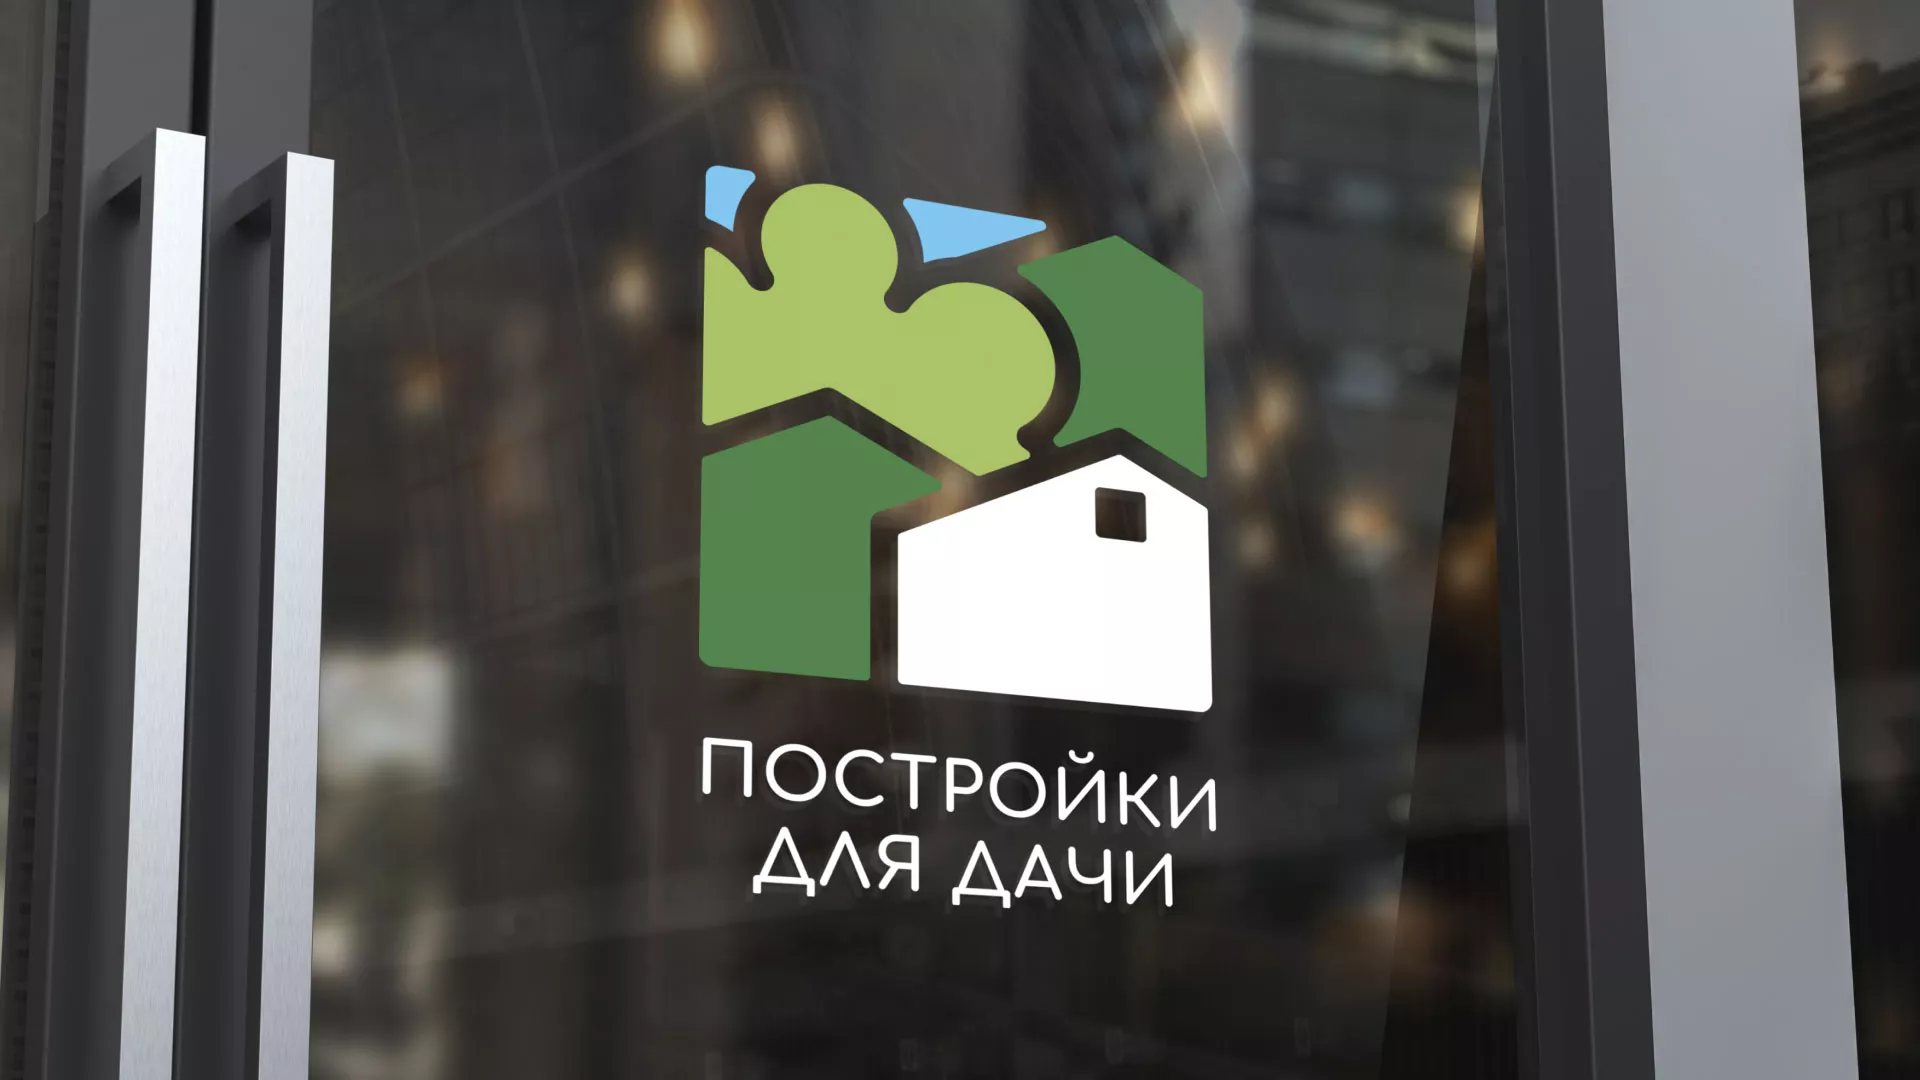 Разработка логотипа в Одинцово для компании «Постройки для дачи»